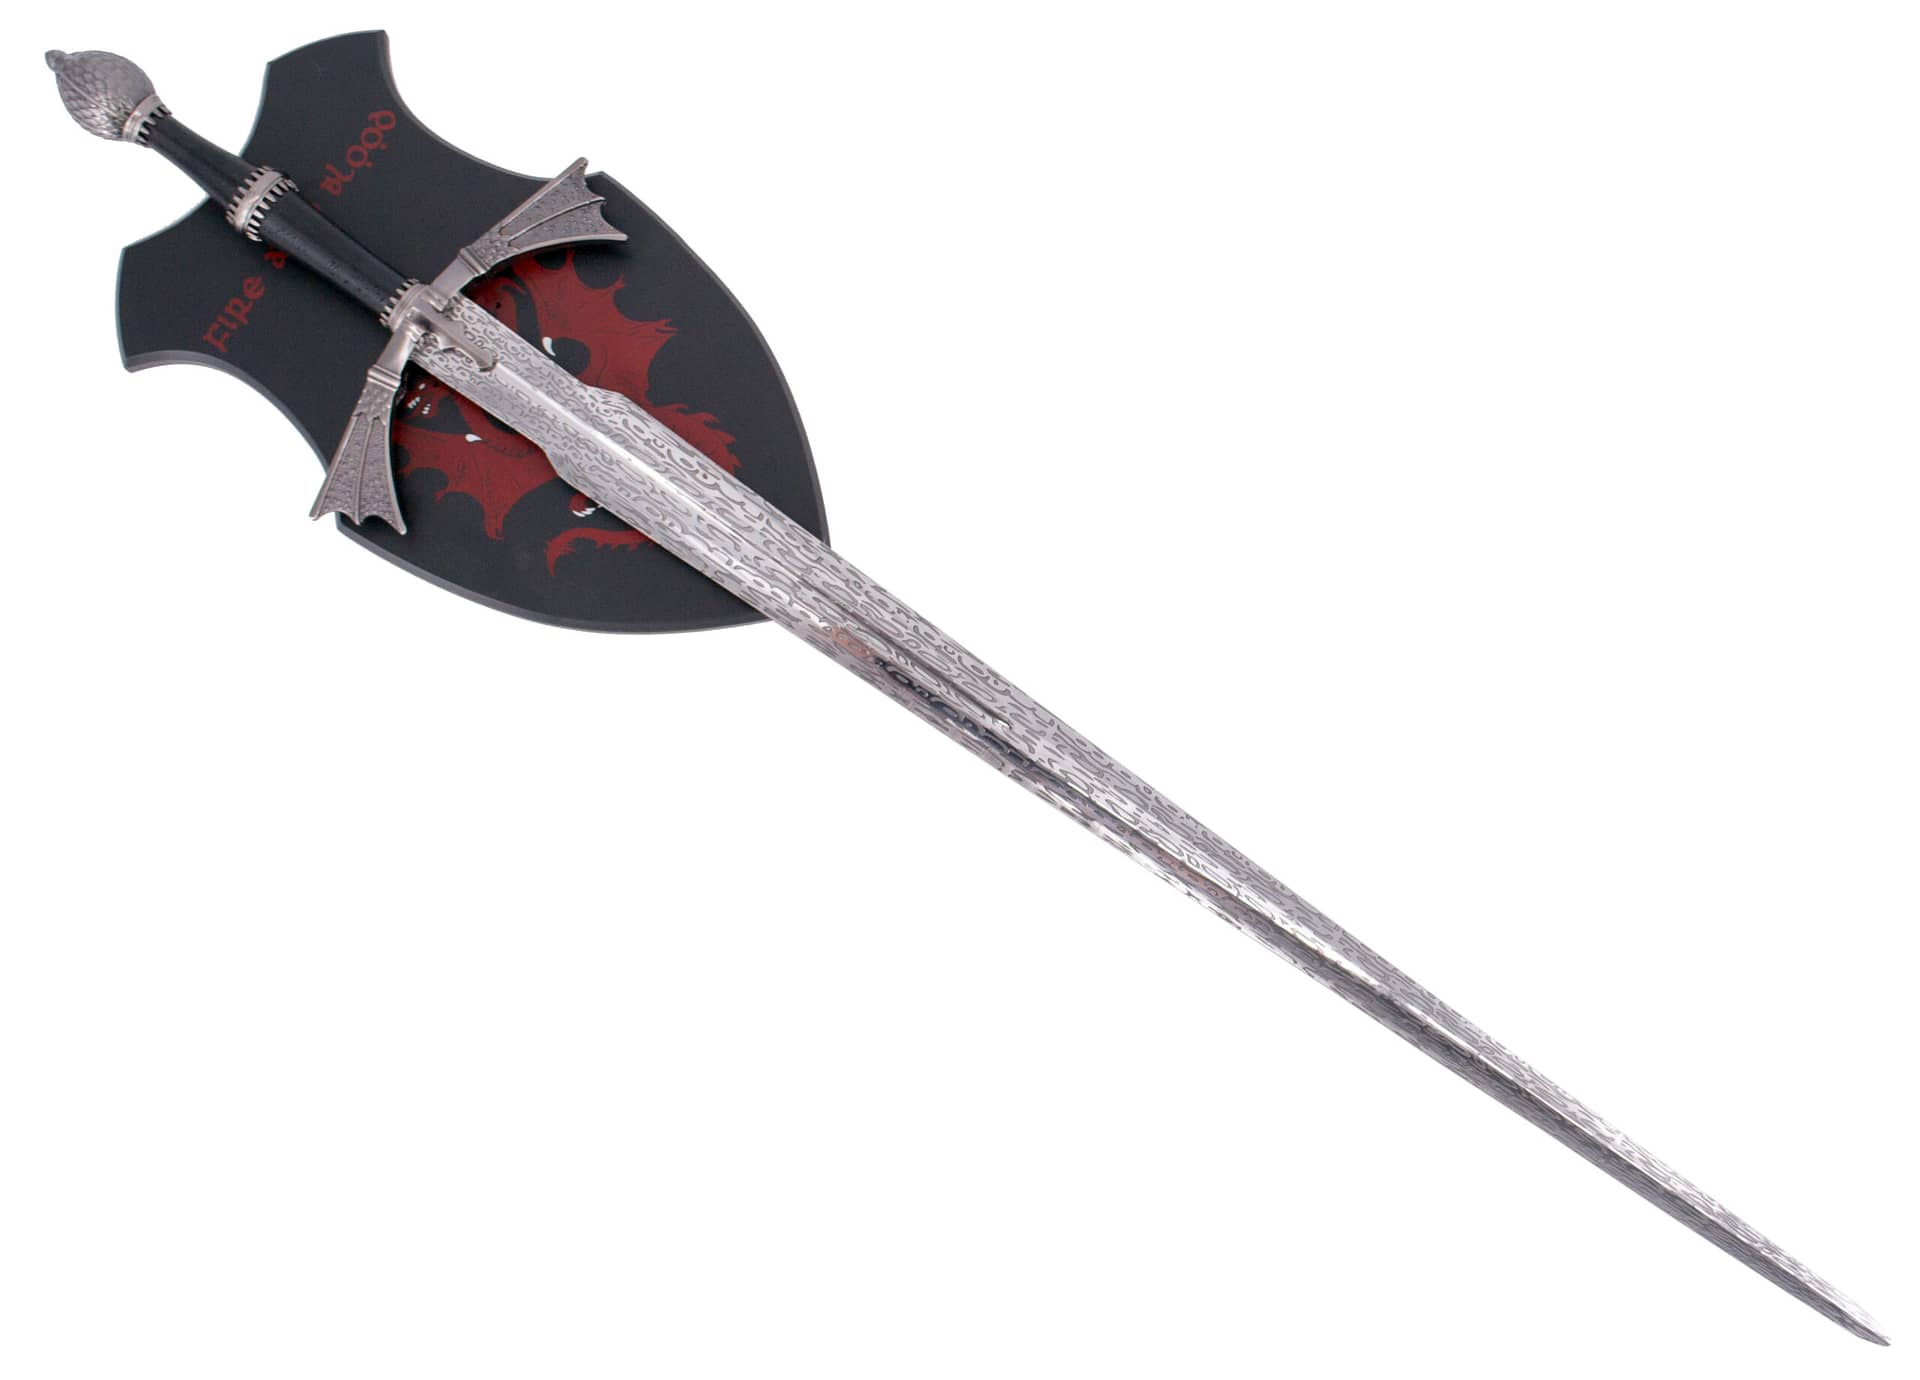 Espada de fantasía de Daemon Targaryen de "House of the Dragon", La Casa del Dragón con expositor para espada. Vendida por Espadas y más